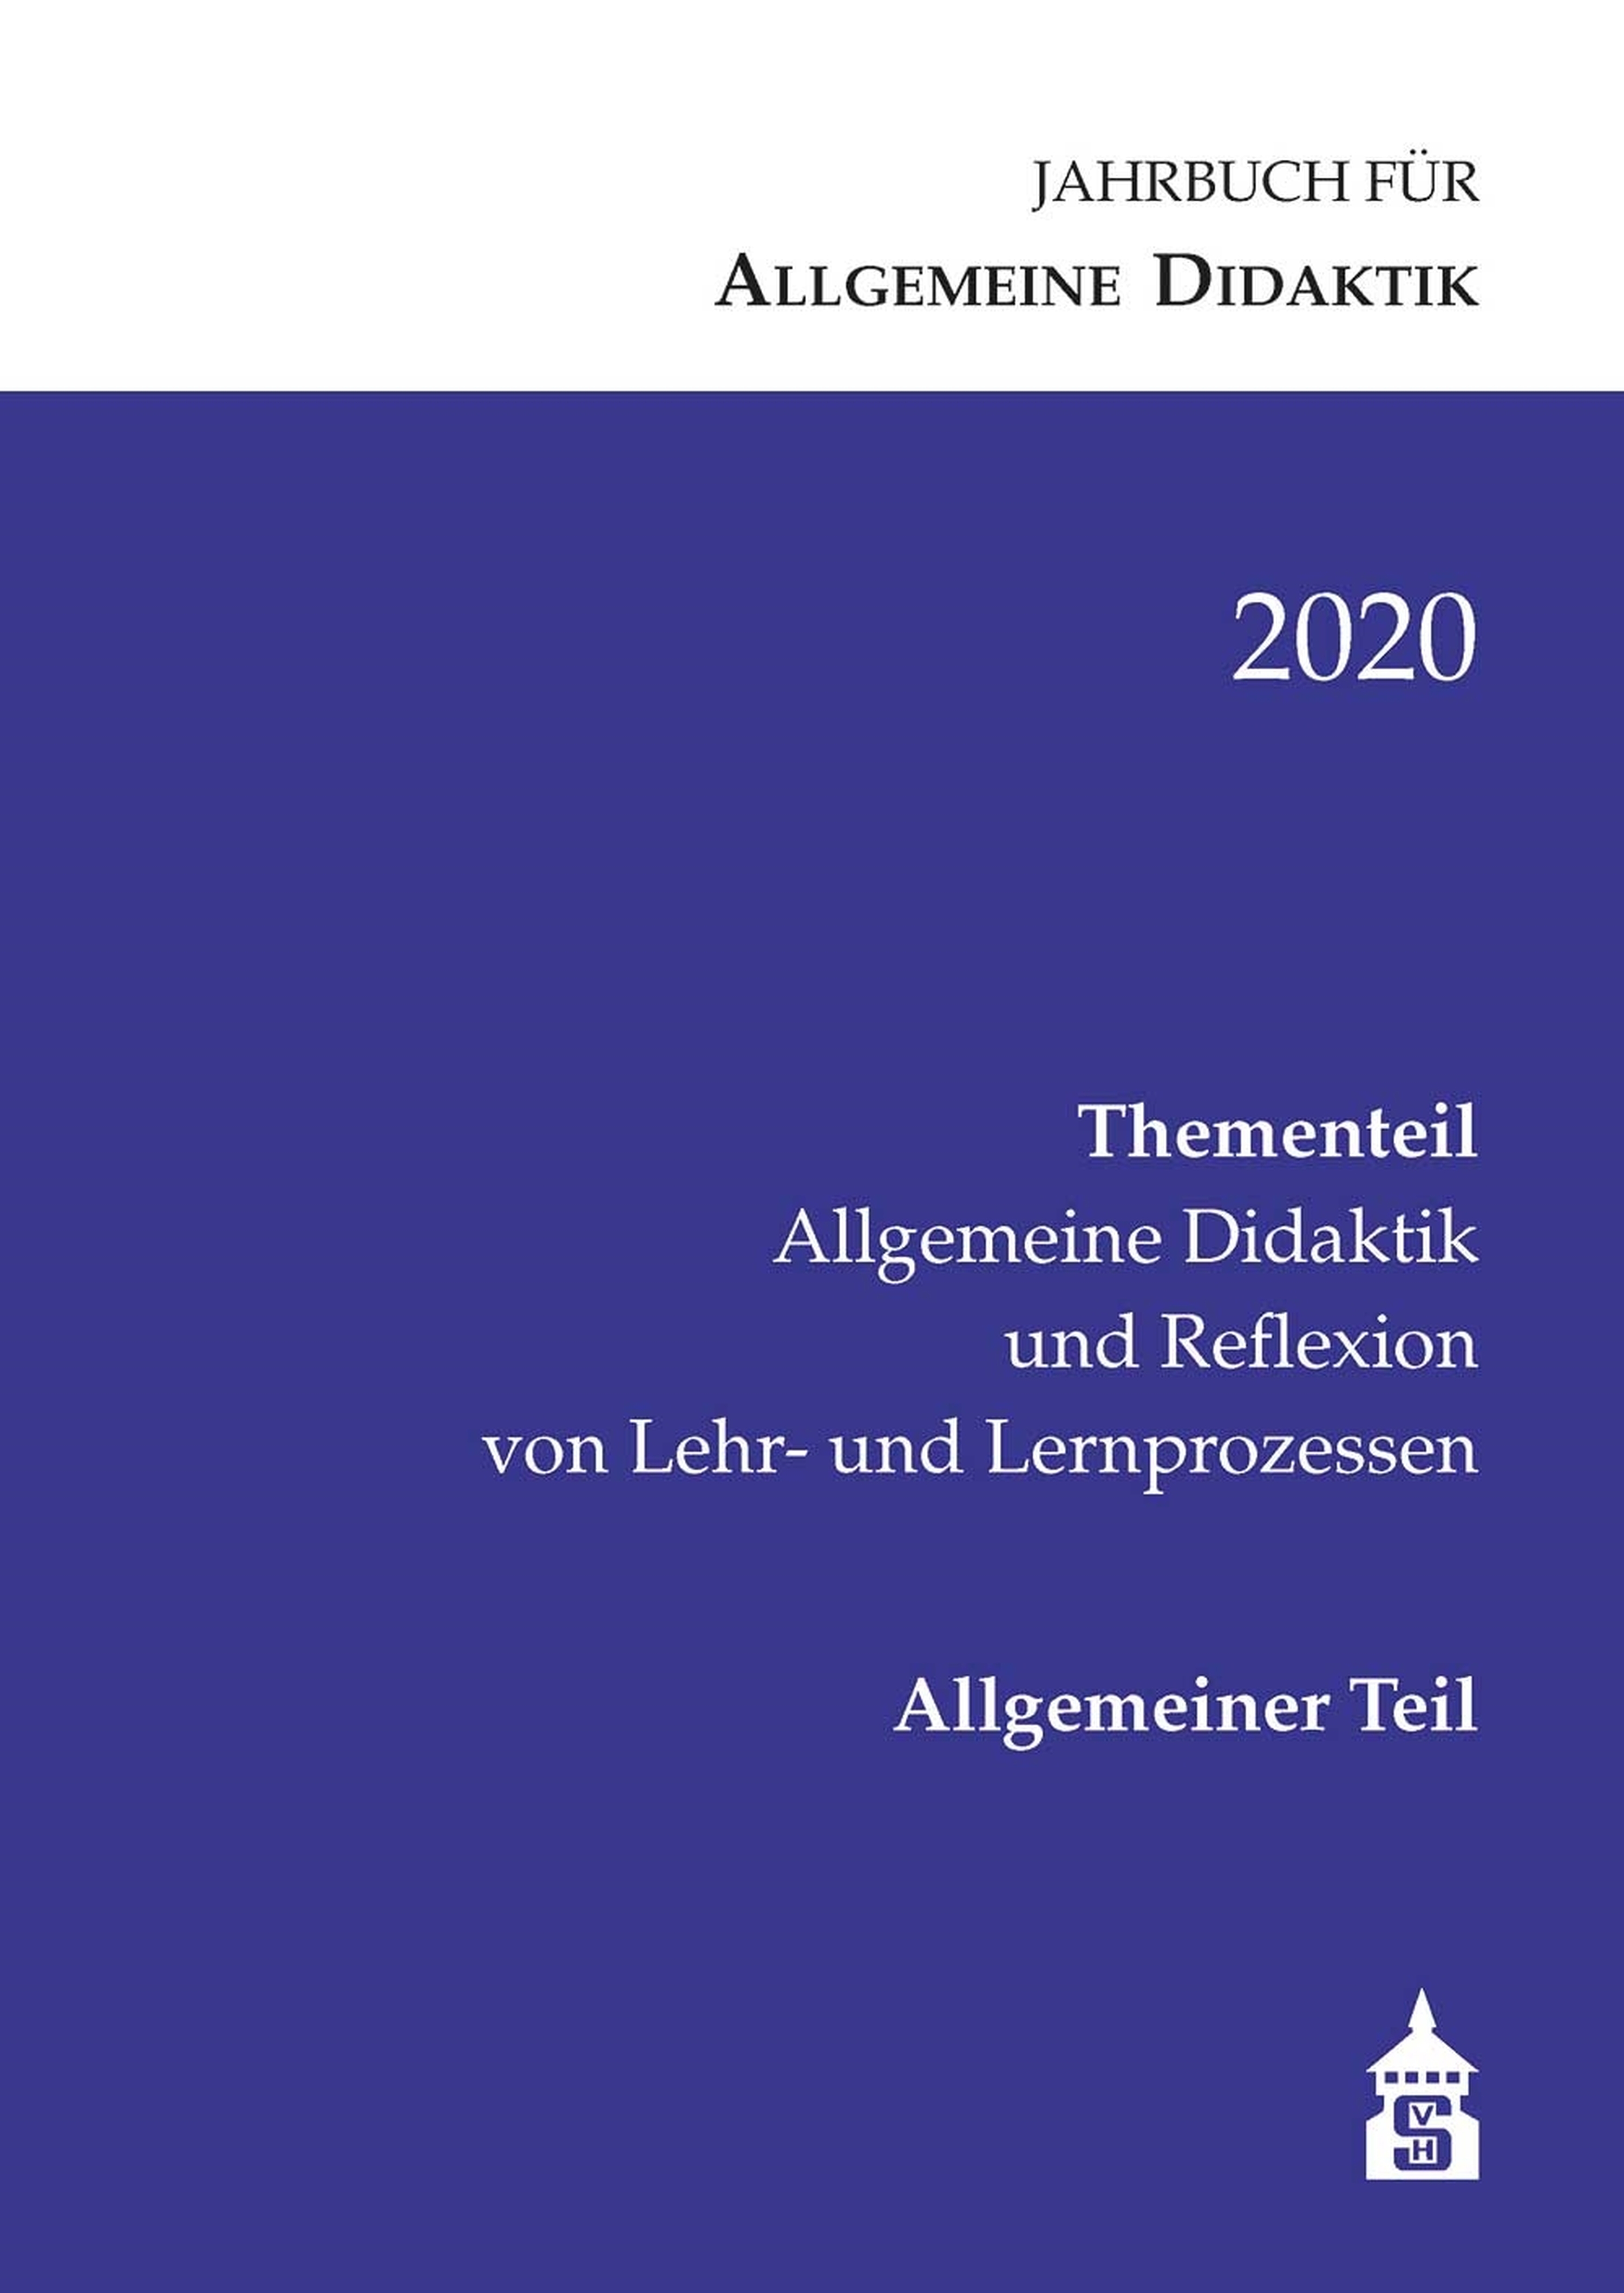 Jahrbuch für Allgemeine Didaktik 2020